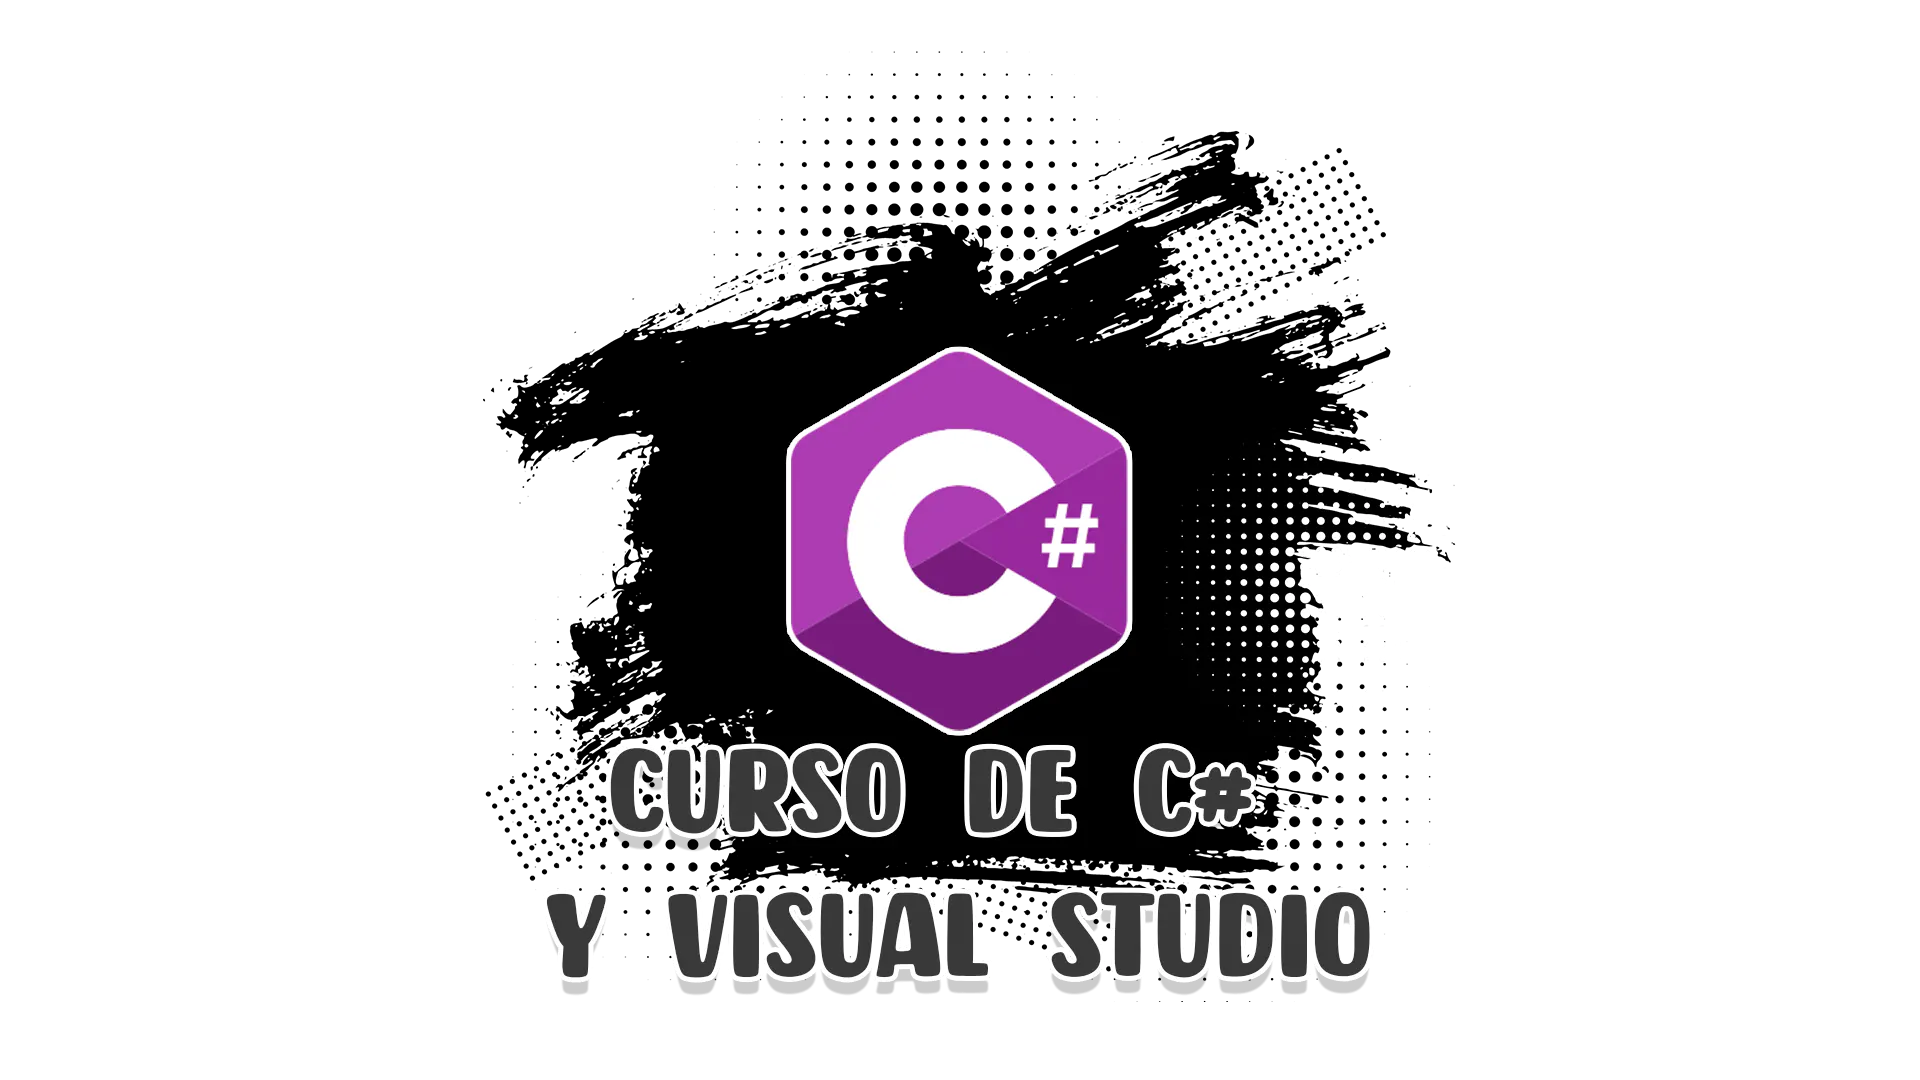 Curso de C# y Visual Studio desde cero